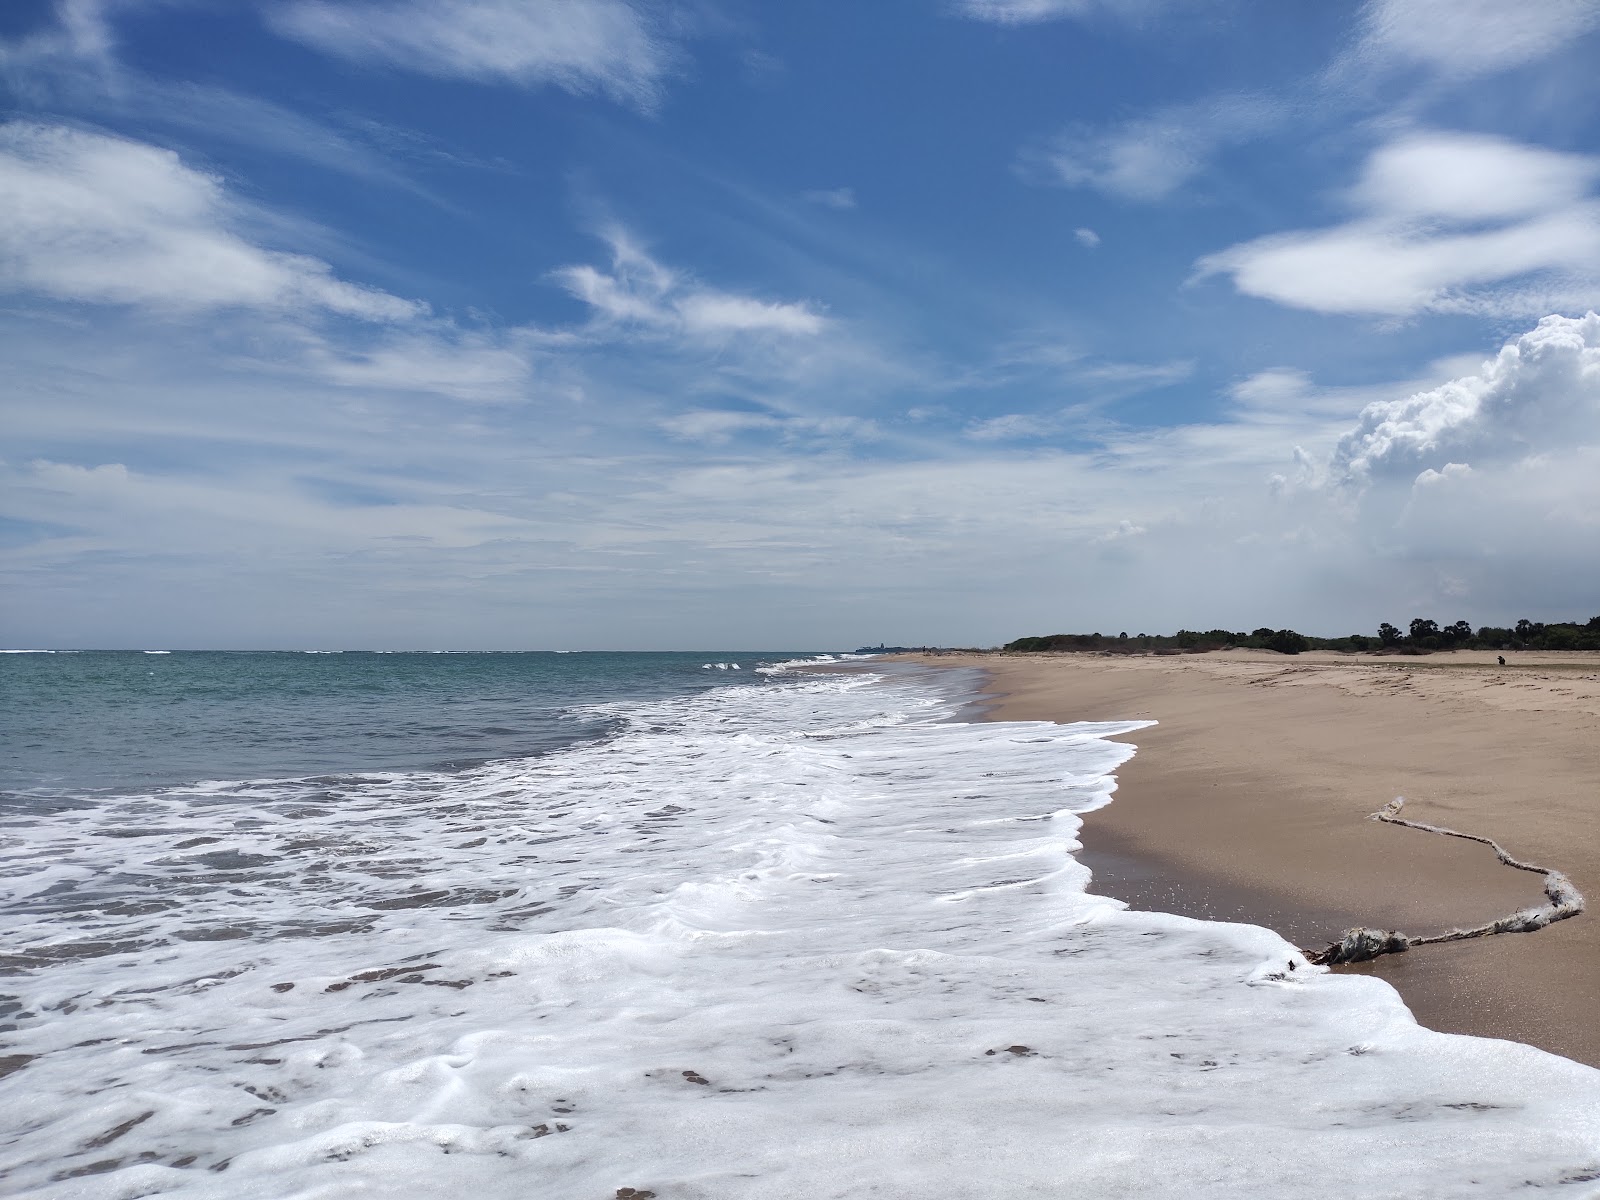 Photo de Kayalpatnam Beach - endroit populaire parmi les connaisseurs de la détente